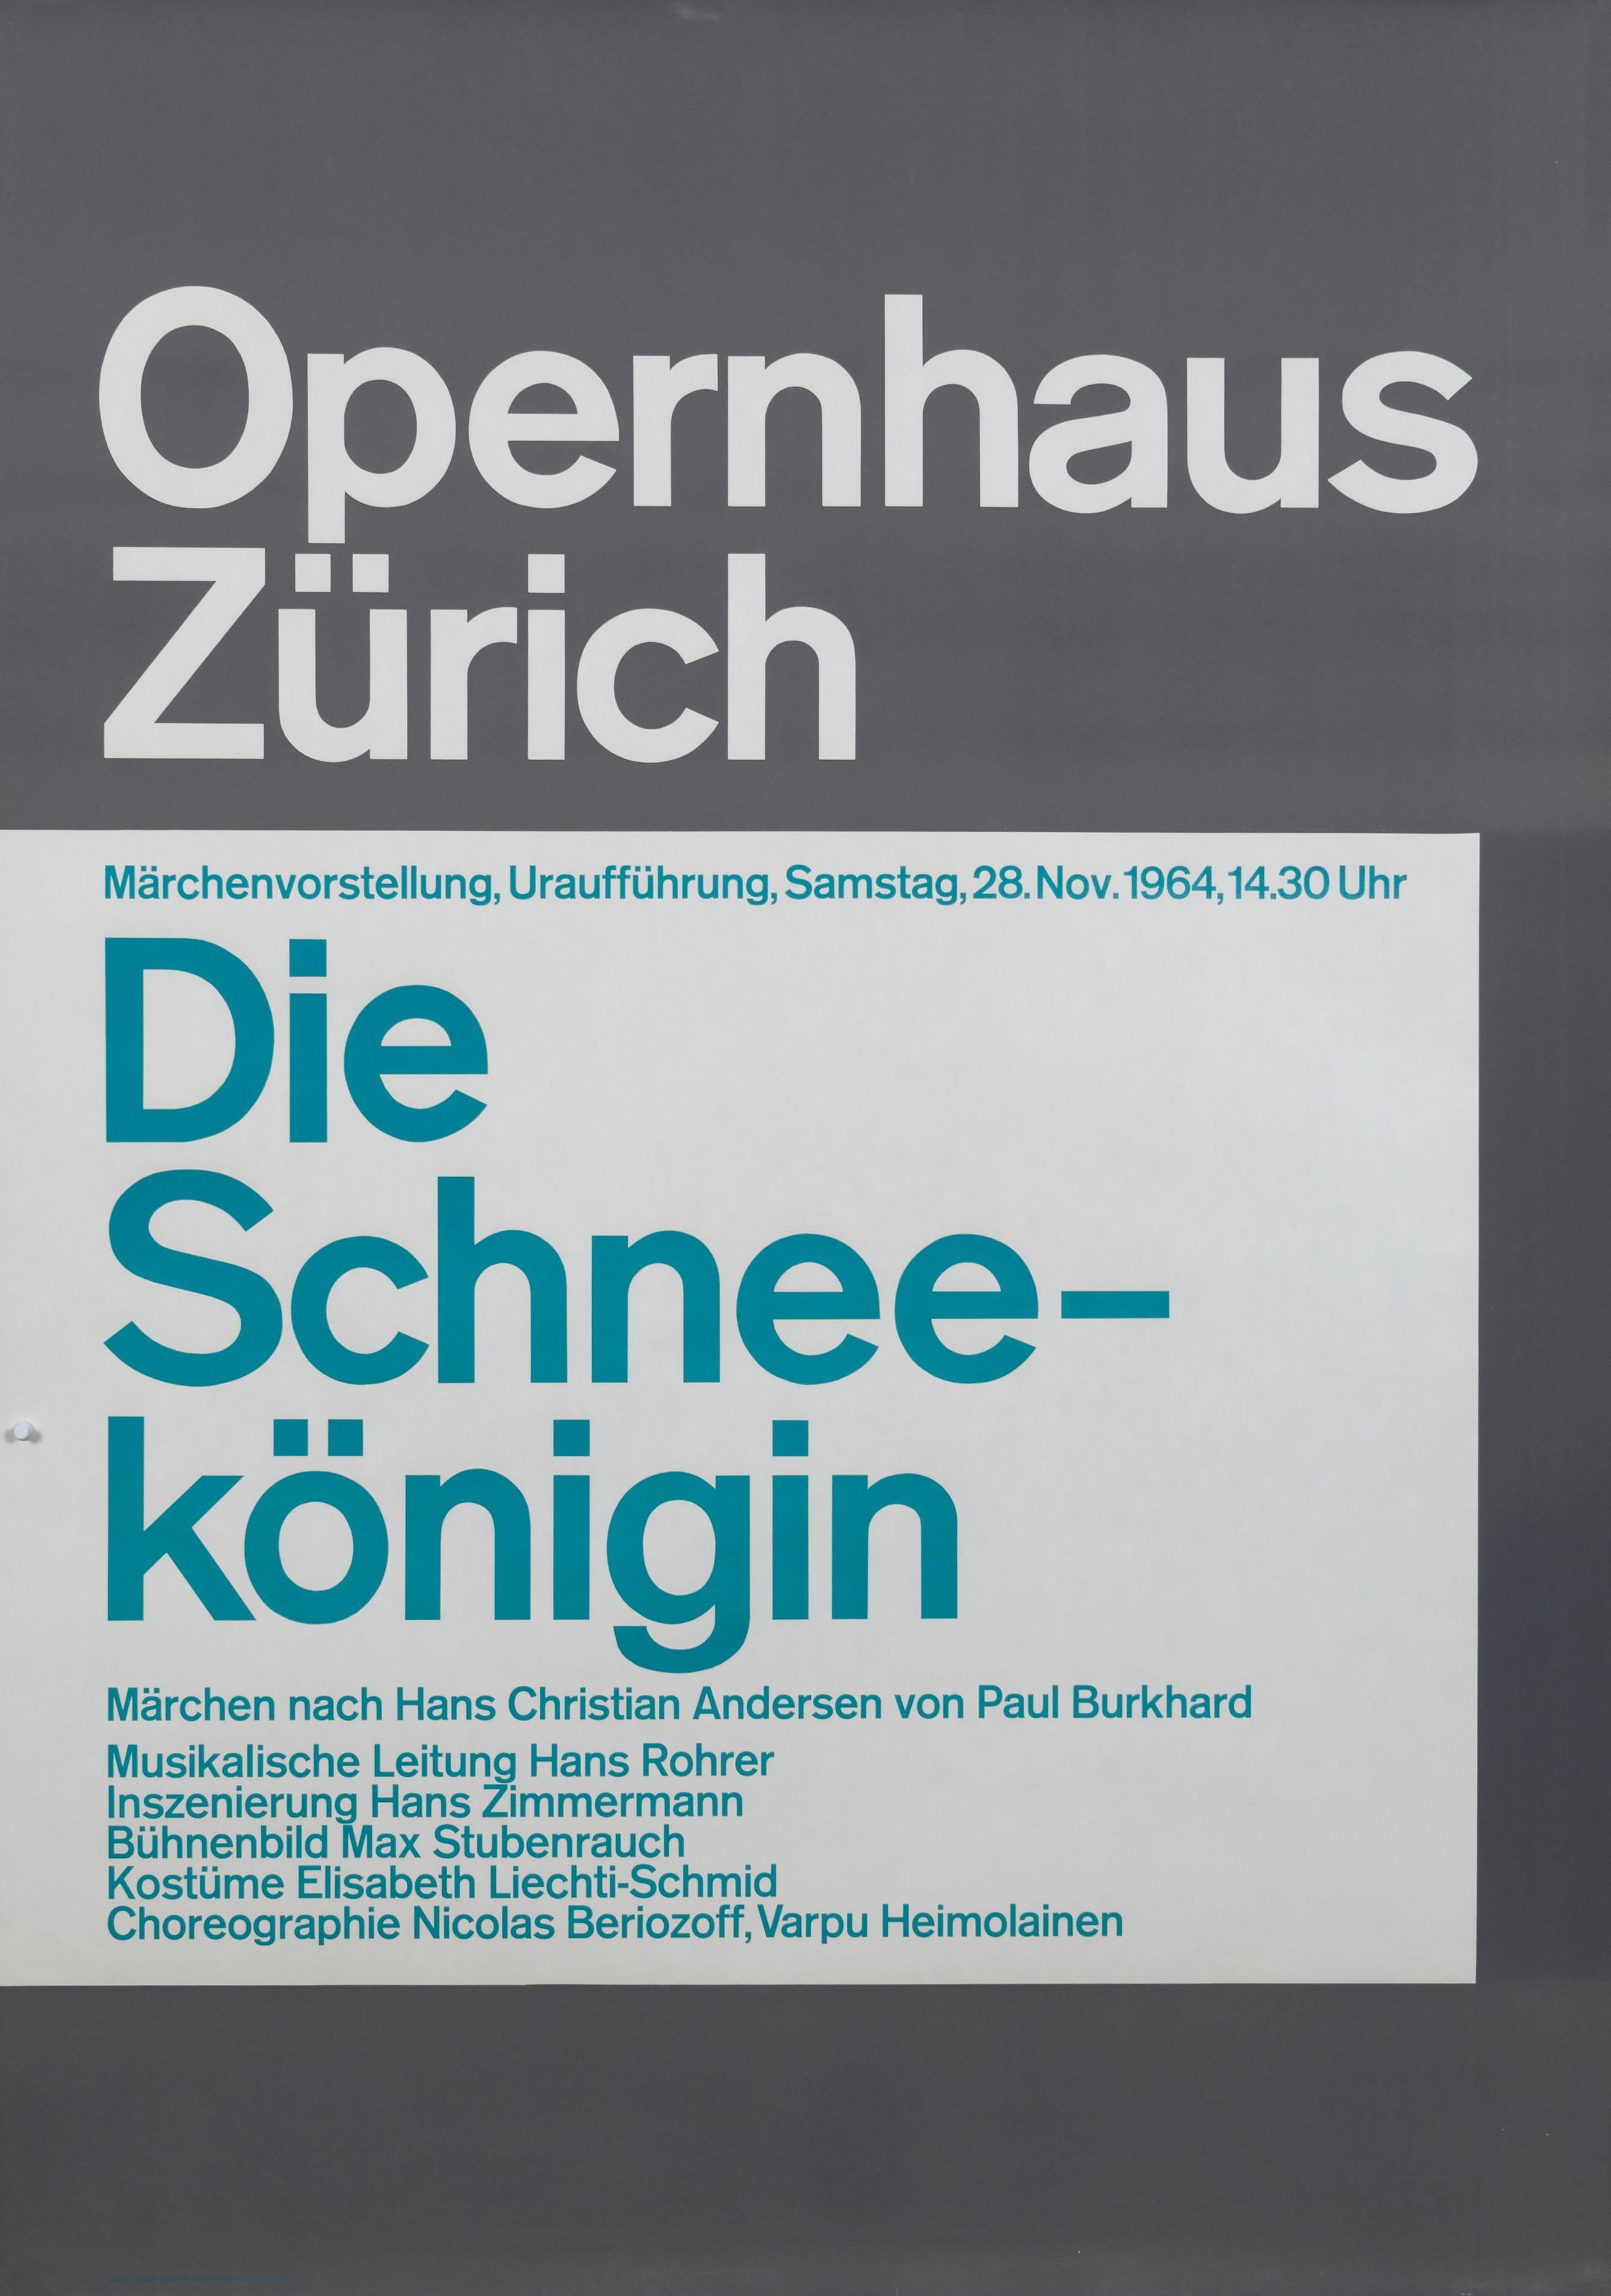 "Opernhaus Zurich - The Snow Queen" Swiss Opera Typographic Original Poster - Print by Josef Müller-Brockmann